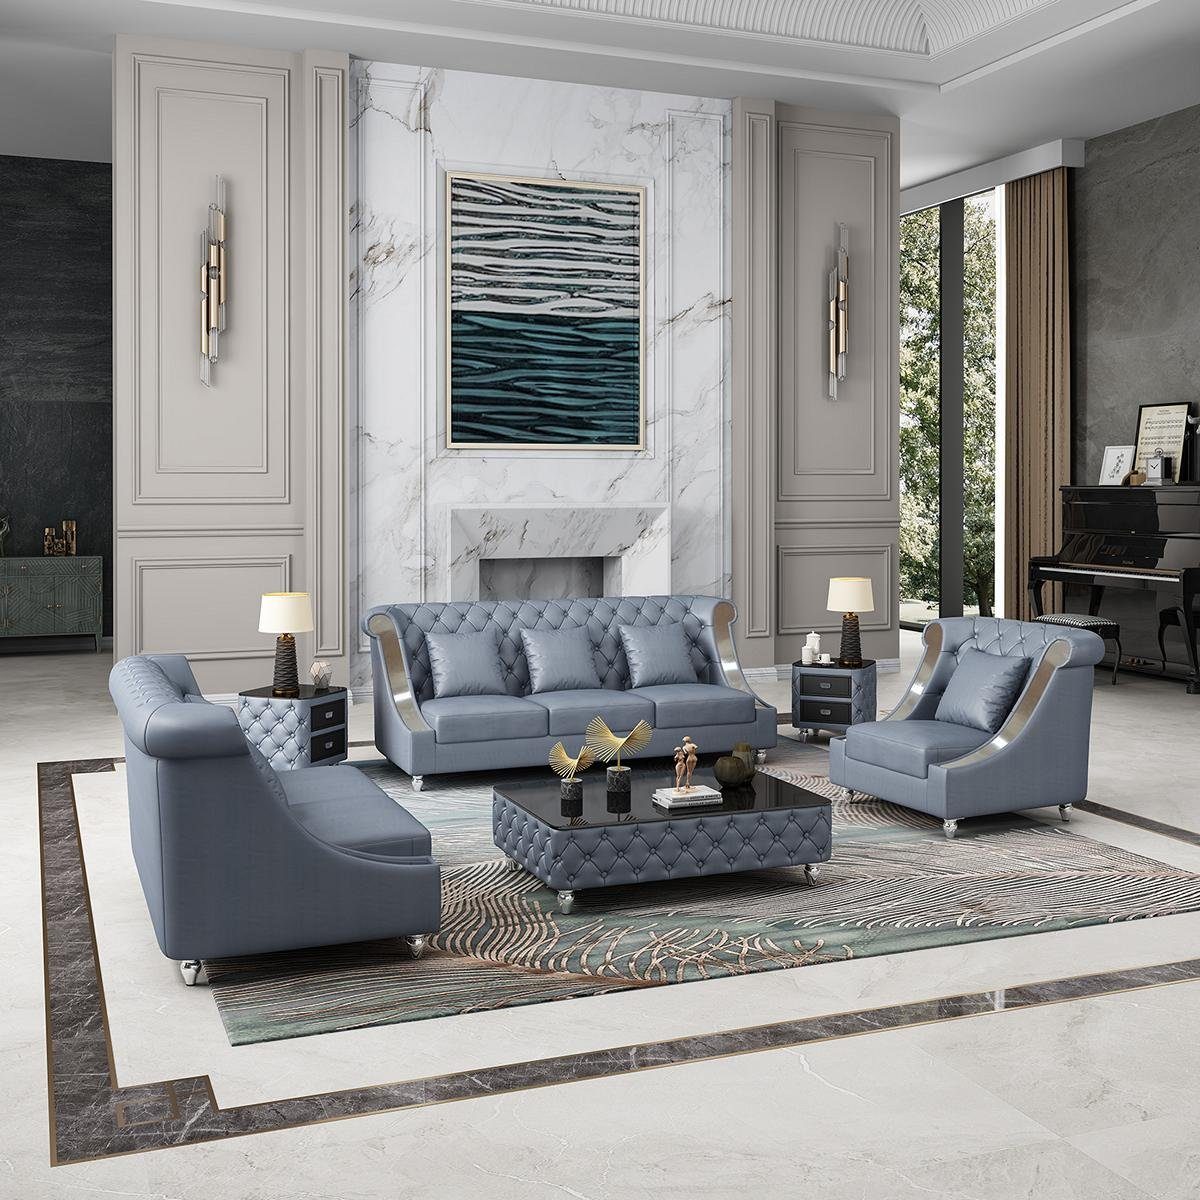 JVmoebel Wohnzimmer-Set, Ledersofa Couch Wohnlandschaft Garnitur Design Modern 3 1 Sitzer Blau | Wohnwände